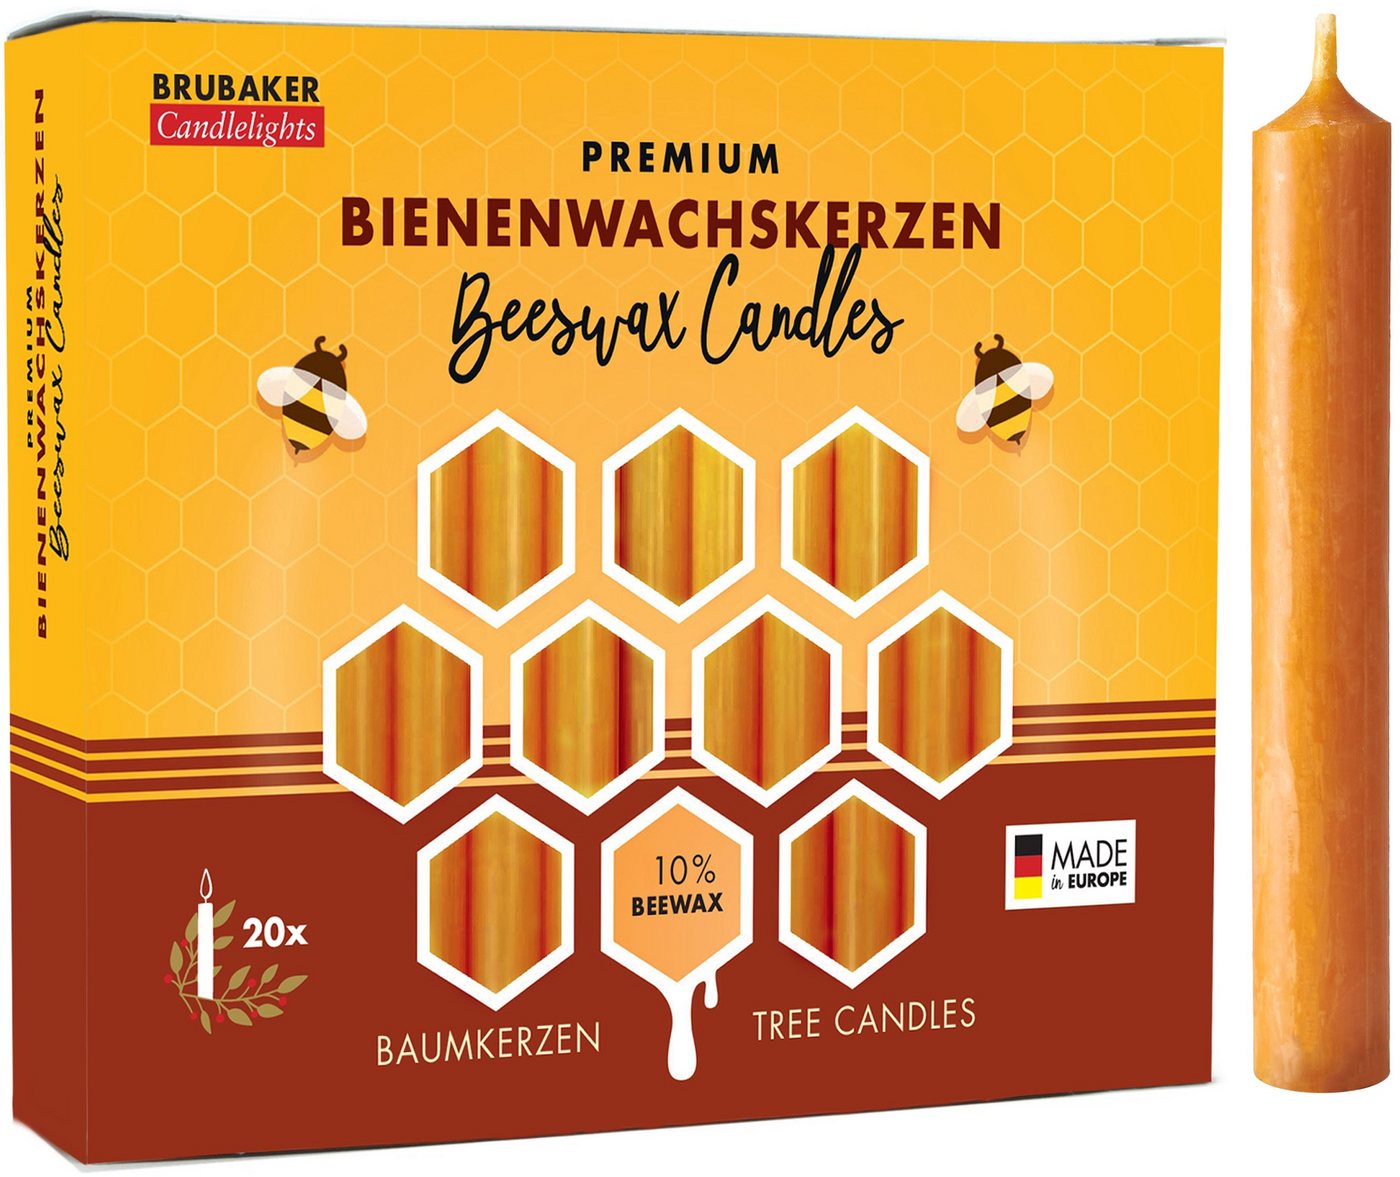 BRUBAKER Bienenwachskerze Honig-gelbe Baumkerzen aus echtem Bienenwachs (rauchfreie Weihnachtskerzen, Pyramidenkerzen mit festlichem Weihnachtsduft, 20-tlg), 10% oder 100% Bienenwachs, Mehrfachpackung Christbaumkerzen von BRUBAKER